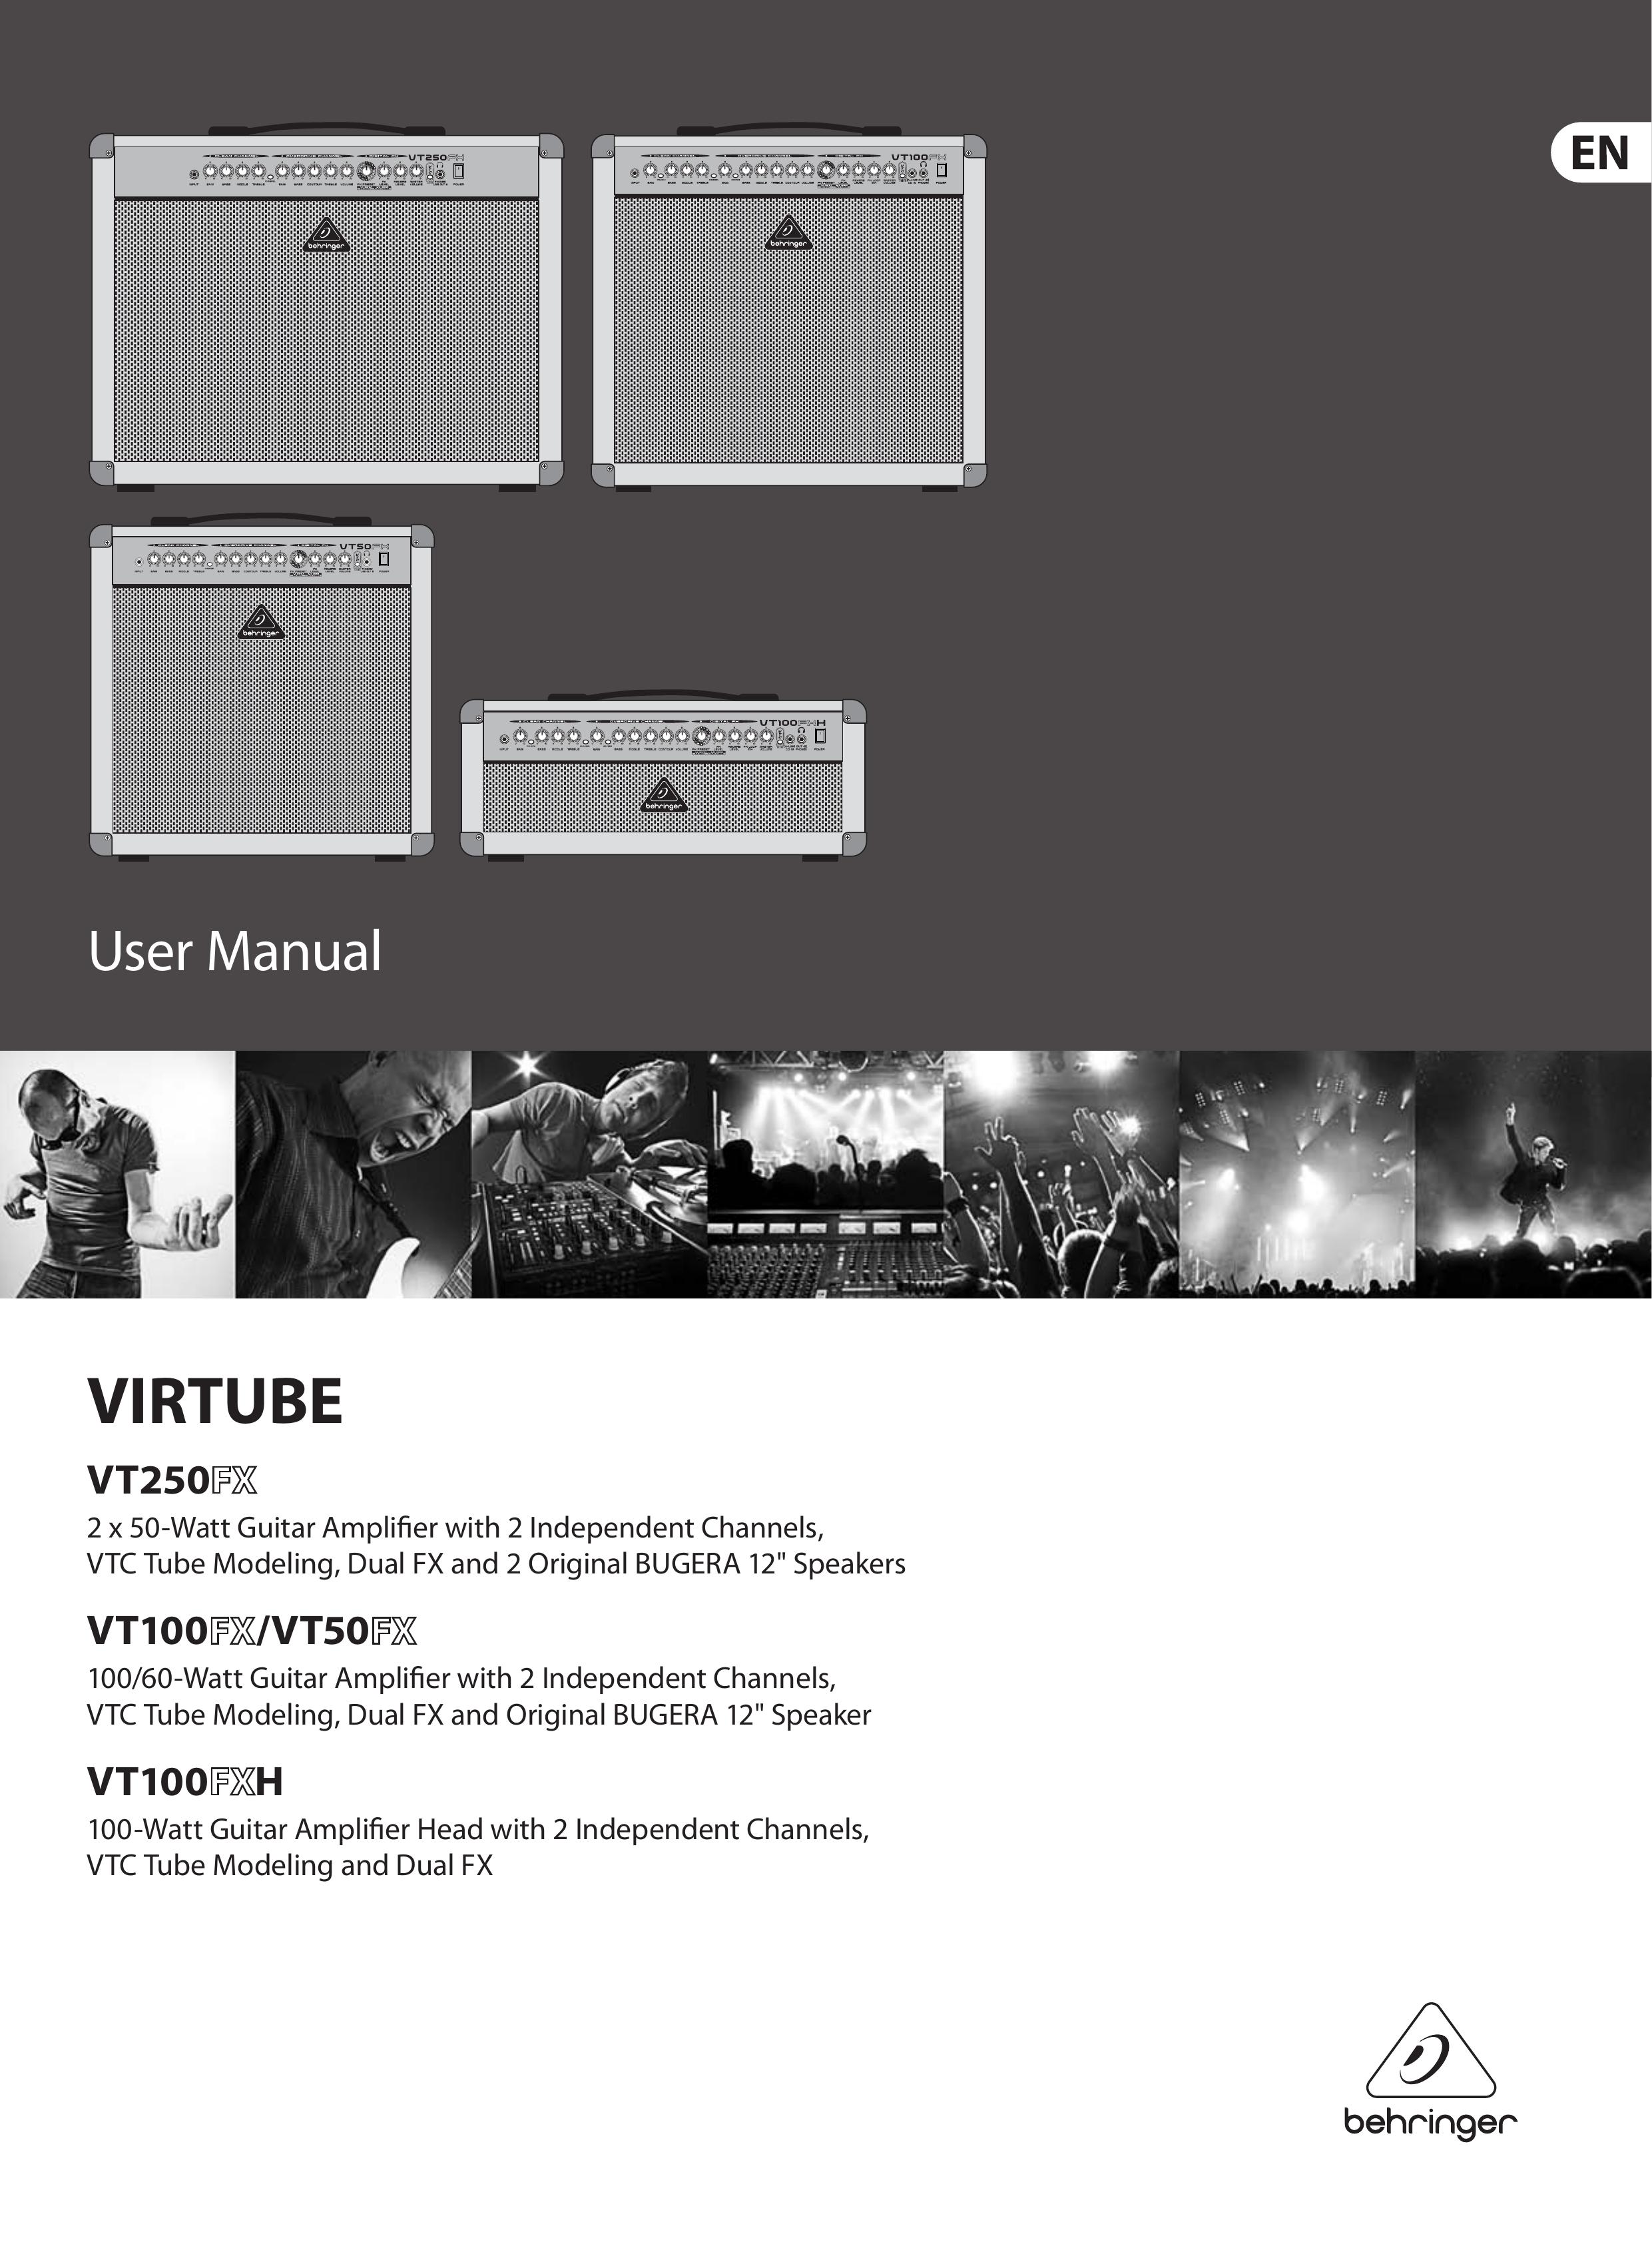 Behringer FX/VT100 Musical Instrument Amplifier User Manual